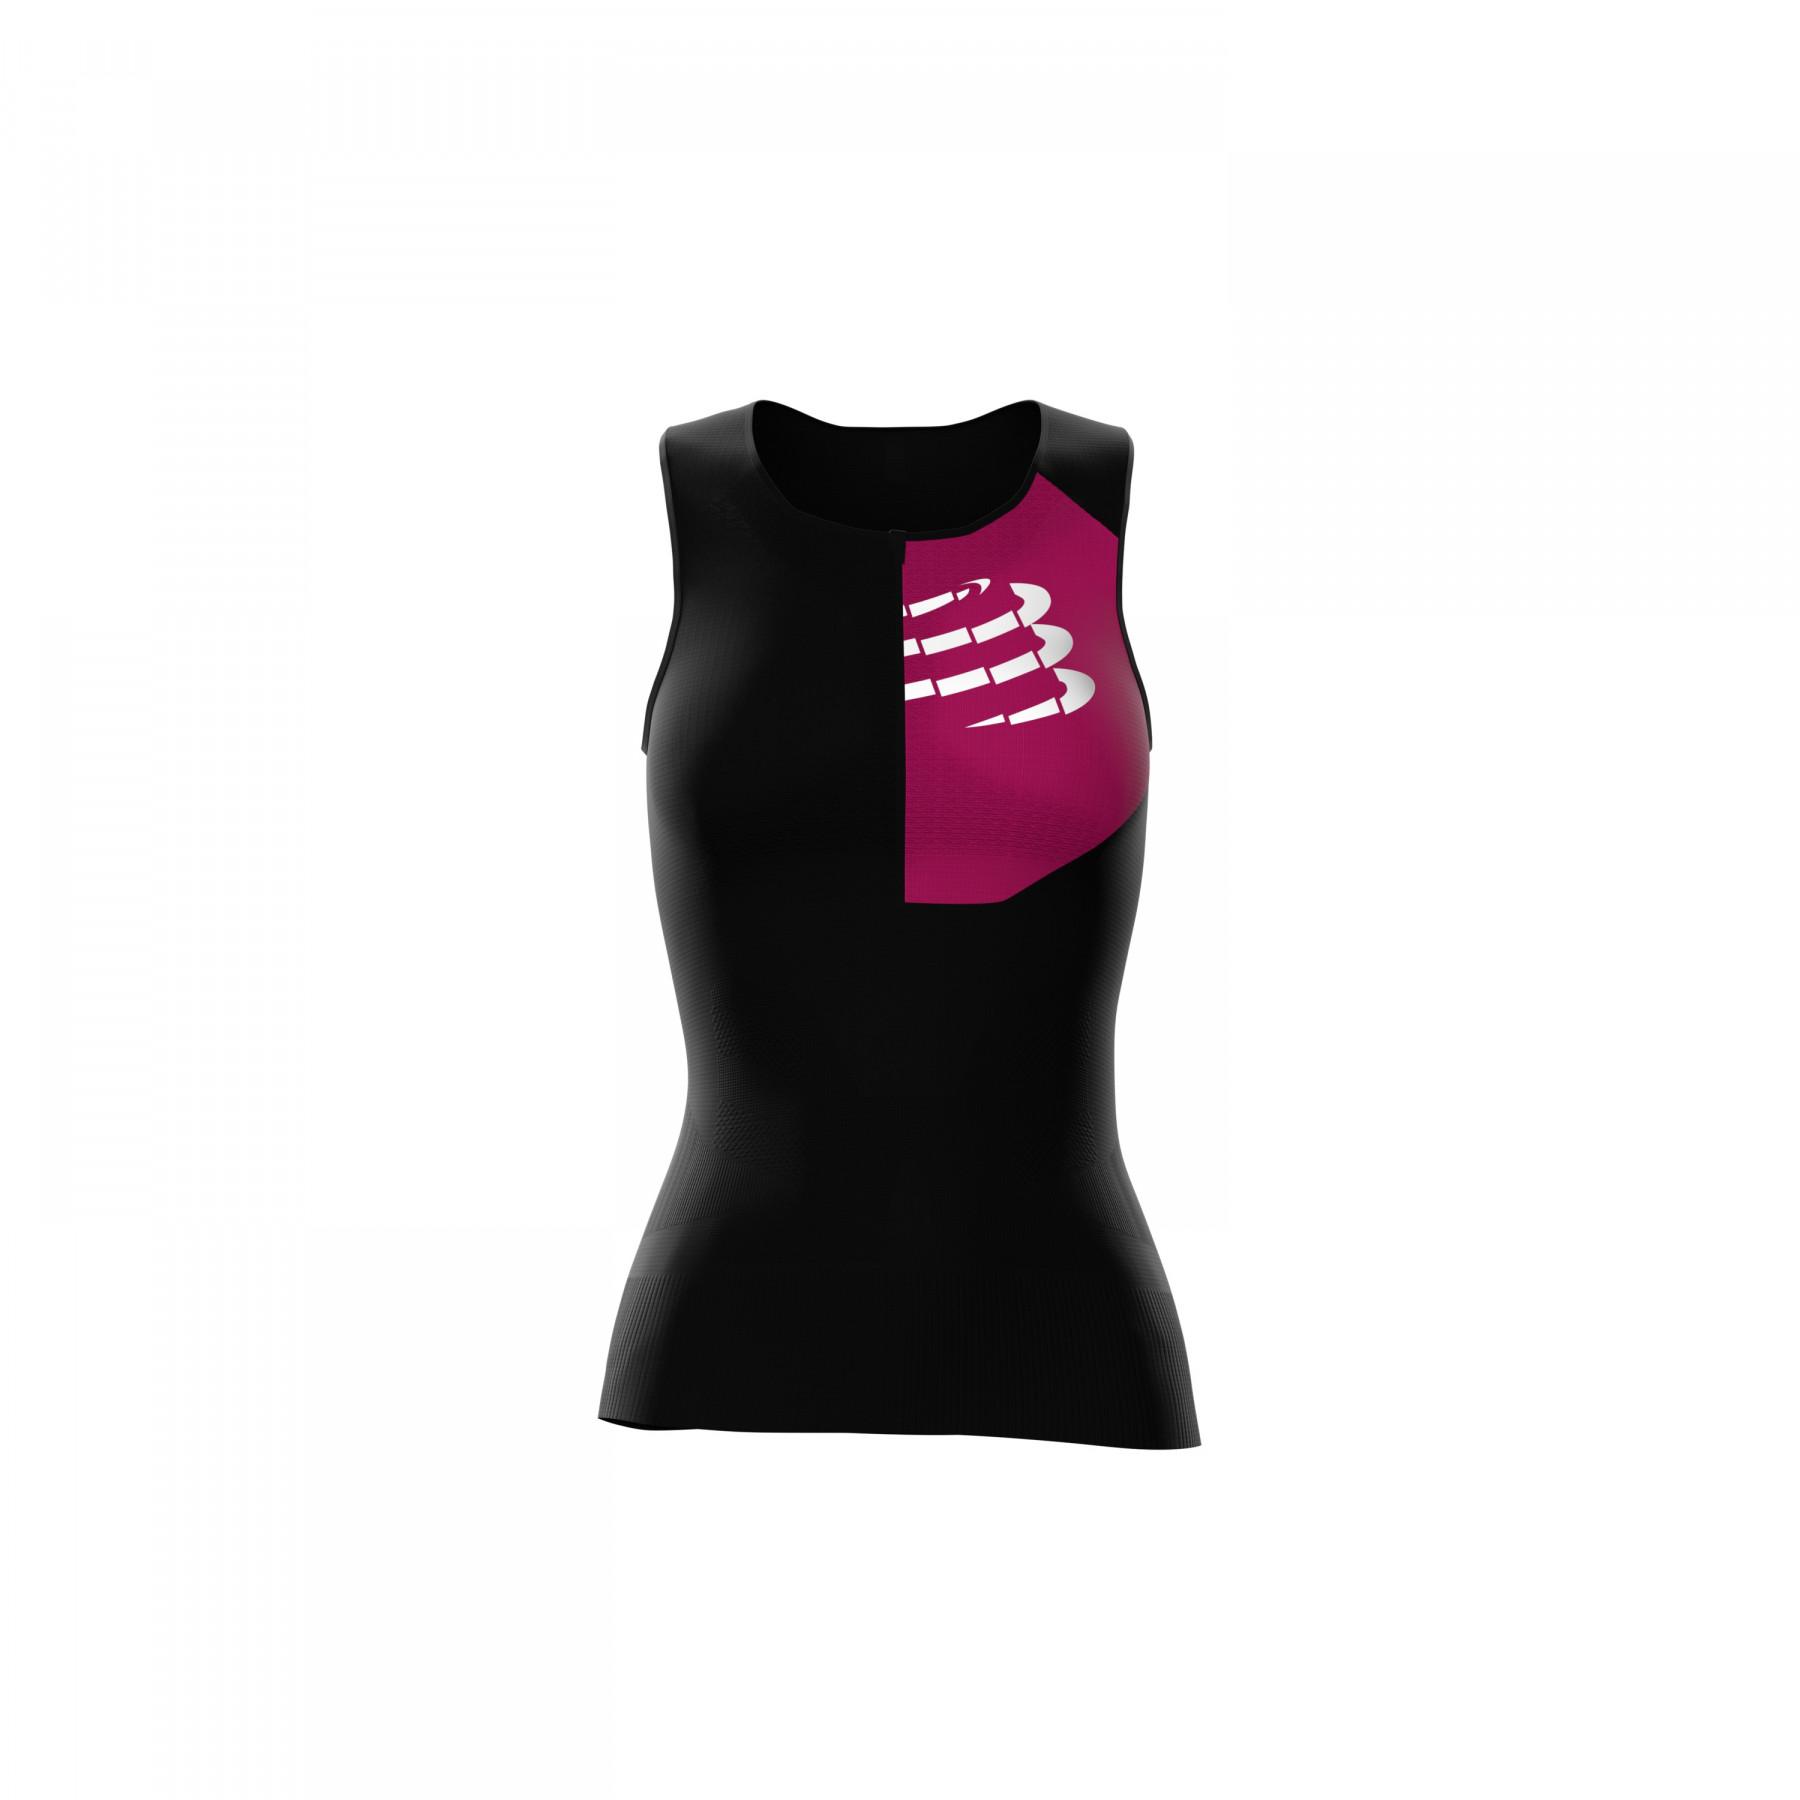 Camiseta de compresión para mujer Compressport Triathlon Postural Aero